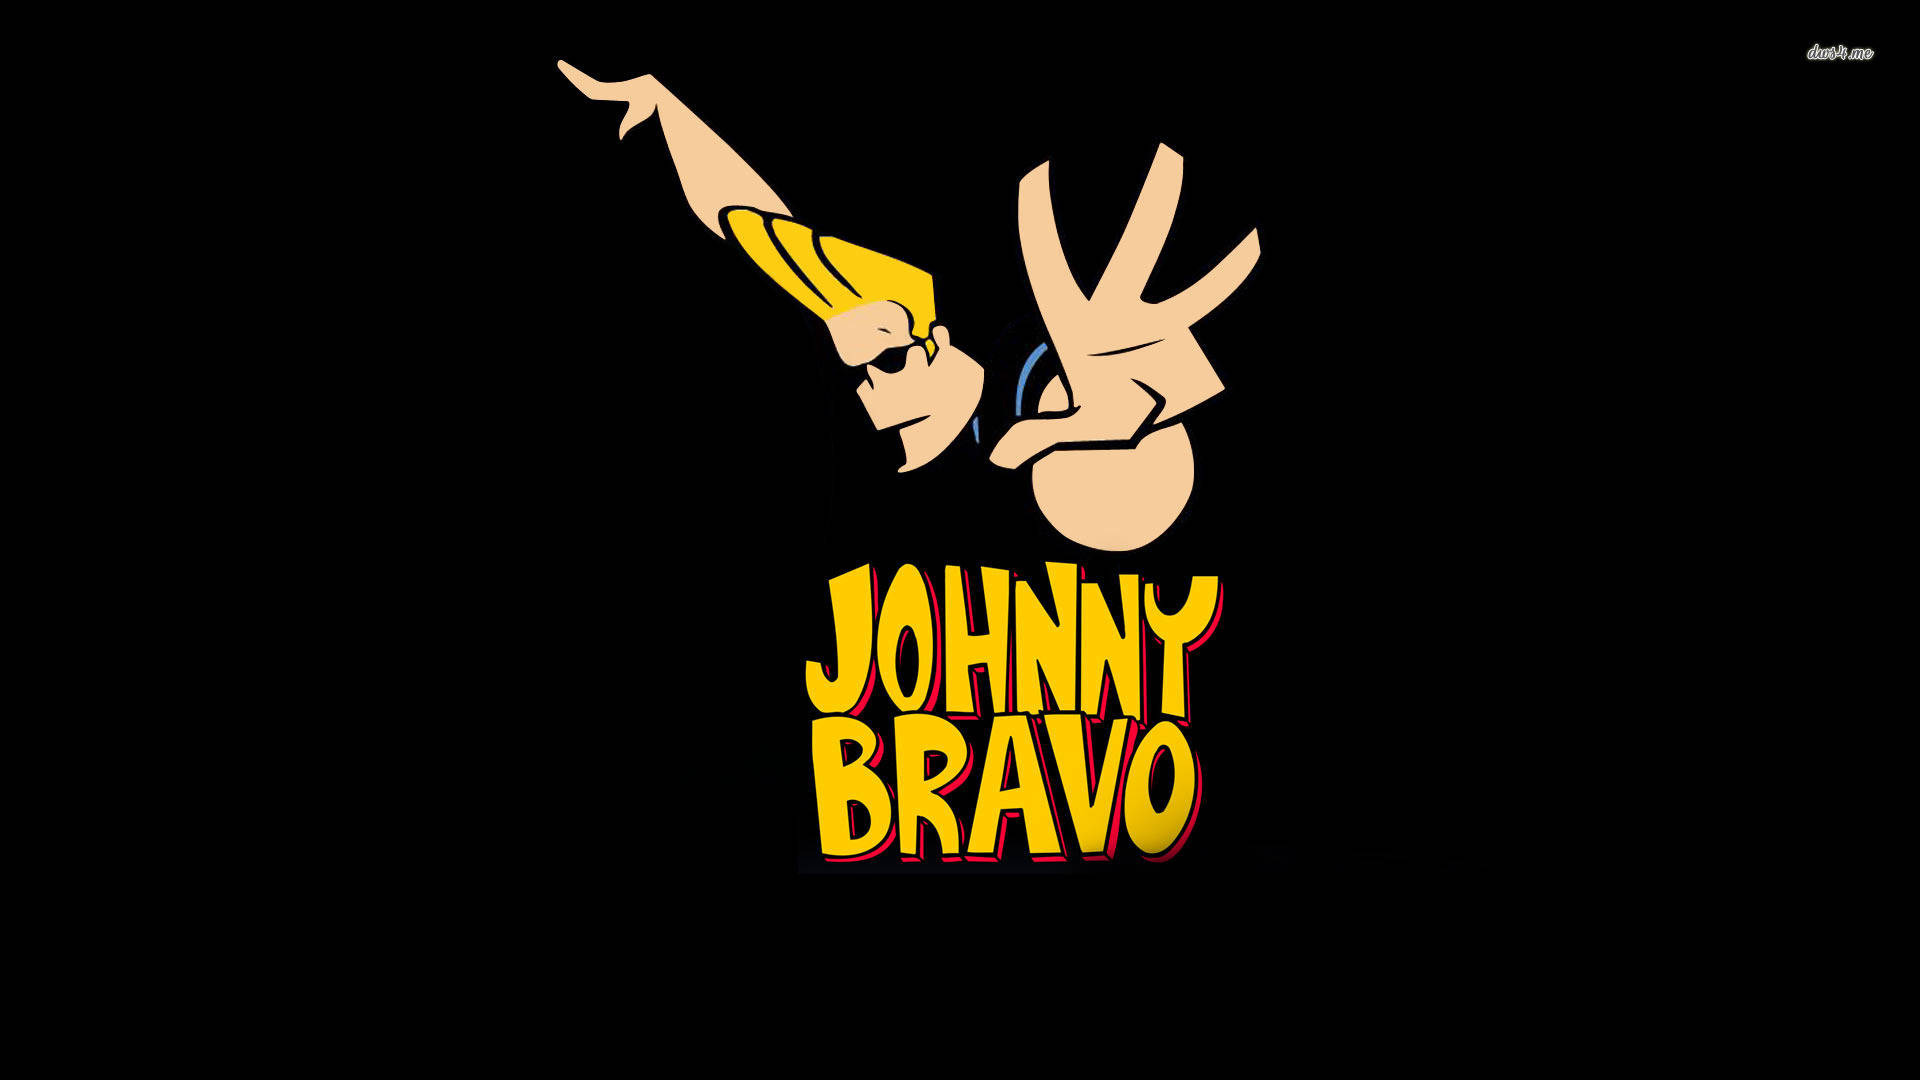 Imágenes De Johnny Bravo